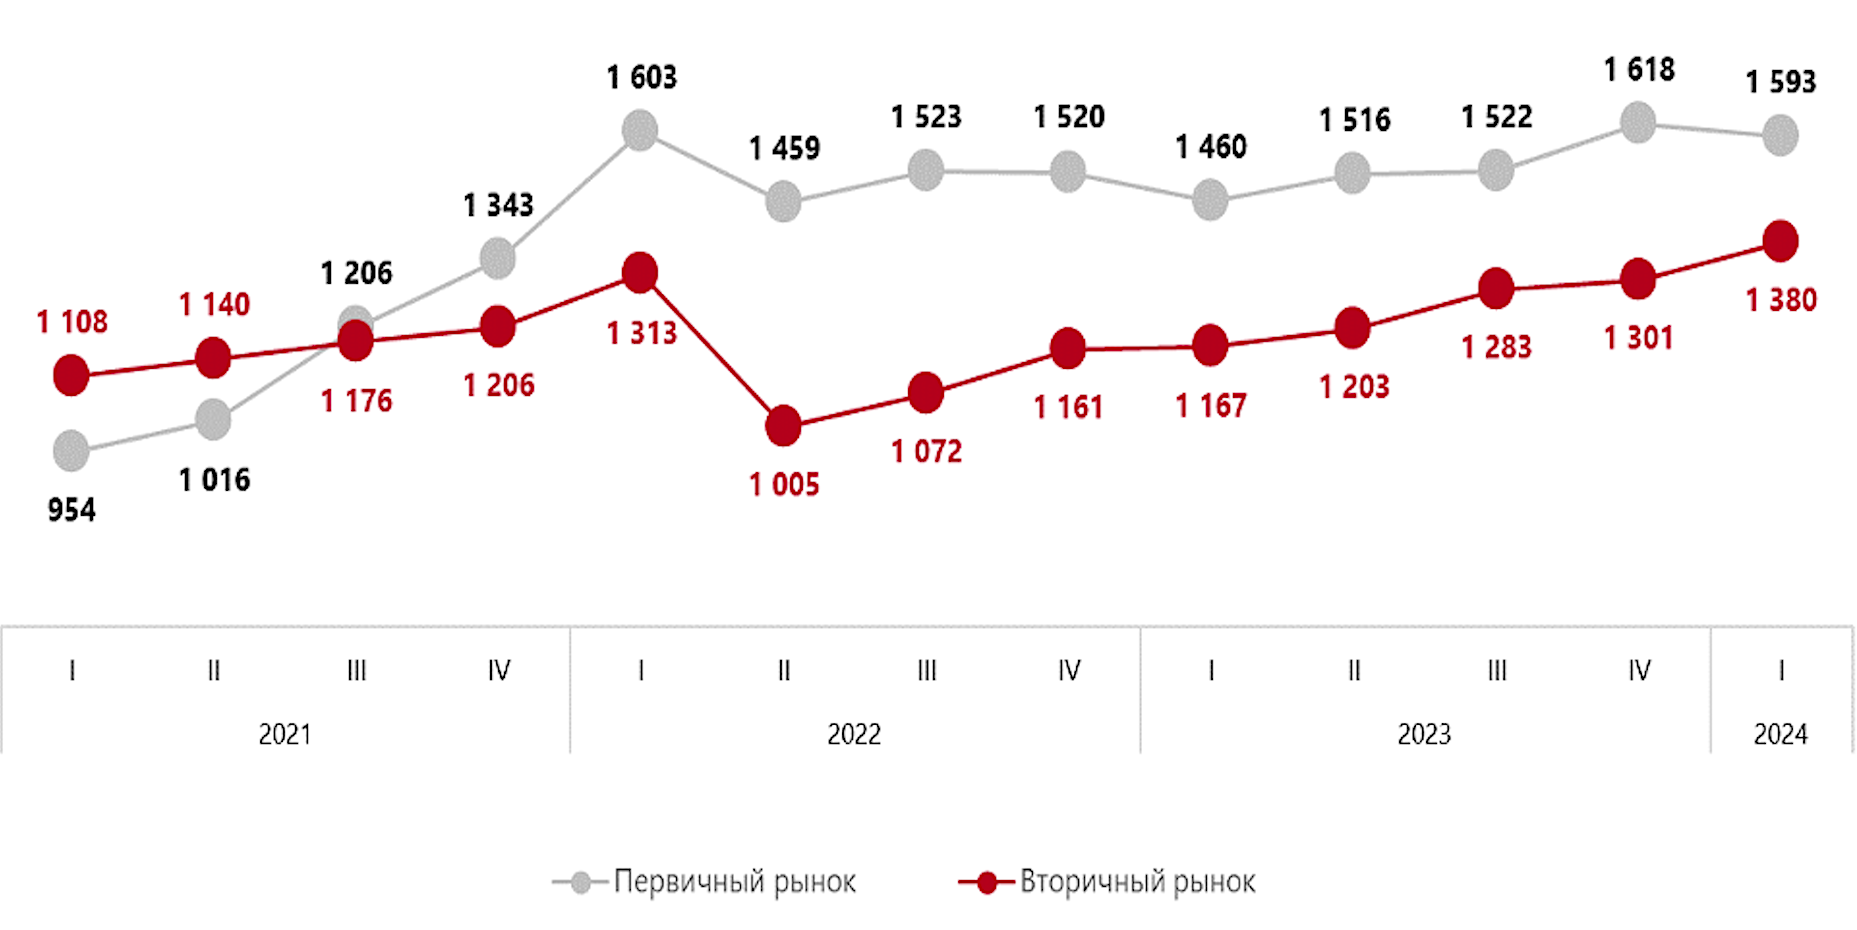 Динамика средневзвешенной цены предложения на первичном и вторичном рынках
элитной жилой недвижимости Москвы